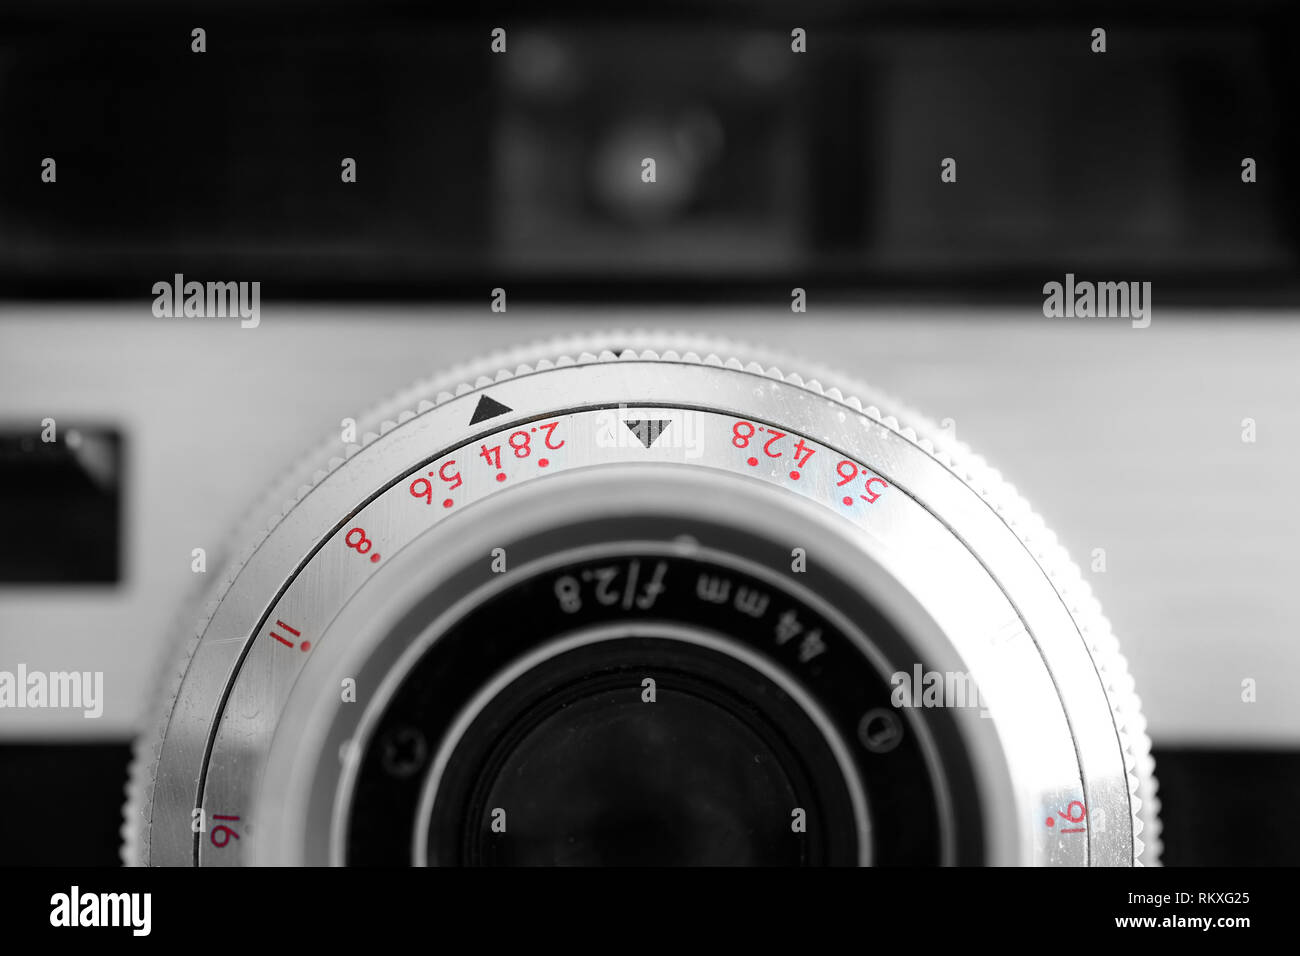 Vecchia macchina fotografica con una lente manuale attrezzatura fotografica per la cattura di immagini Foto Stock